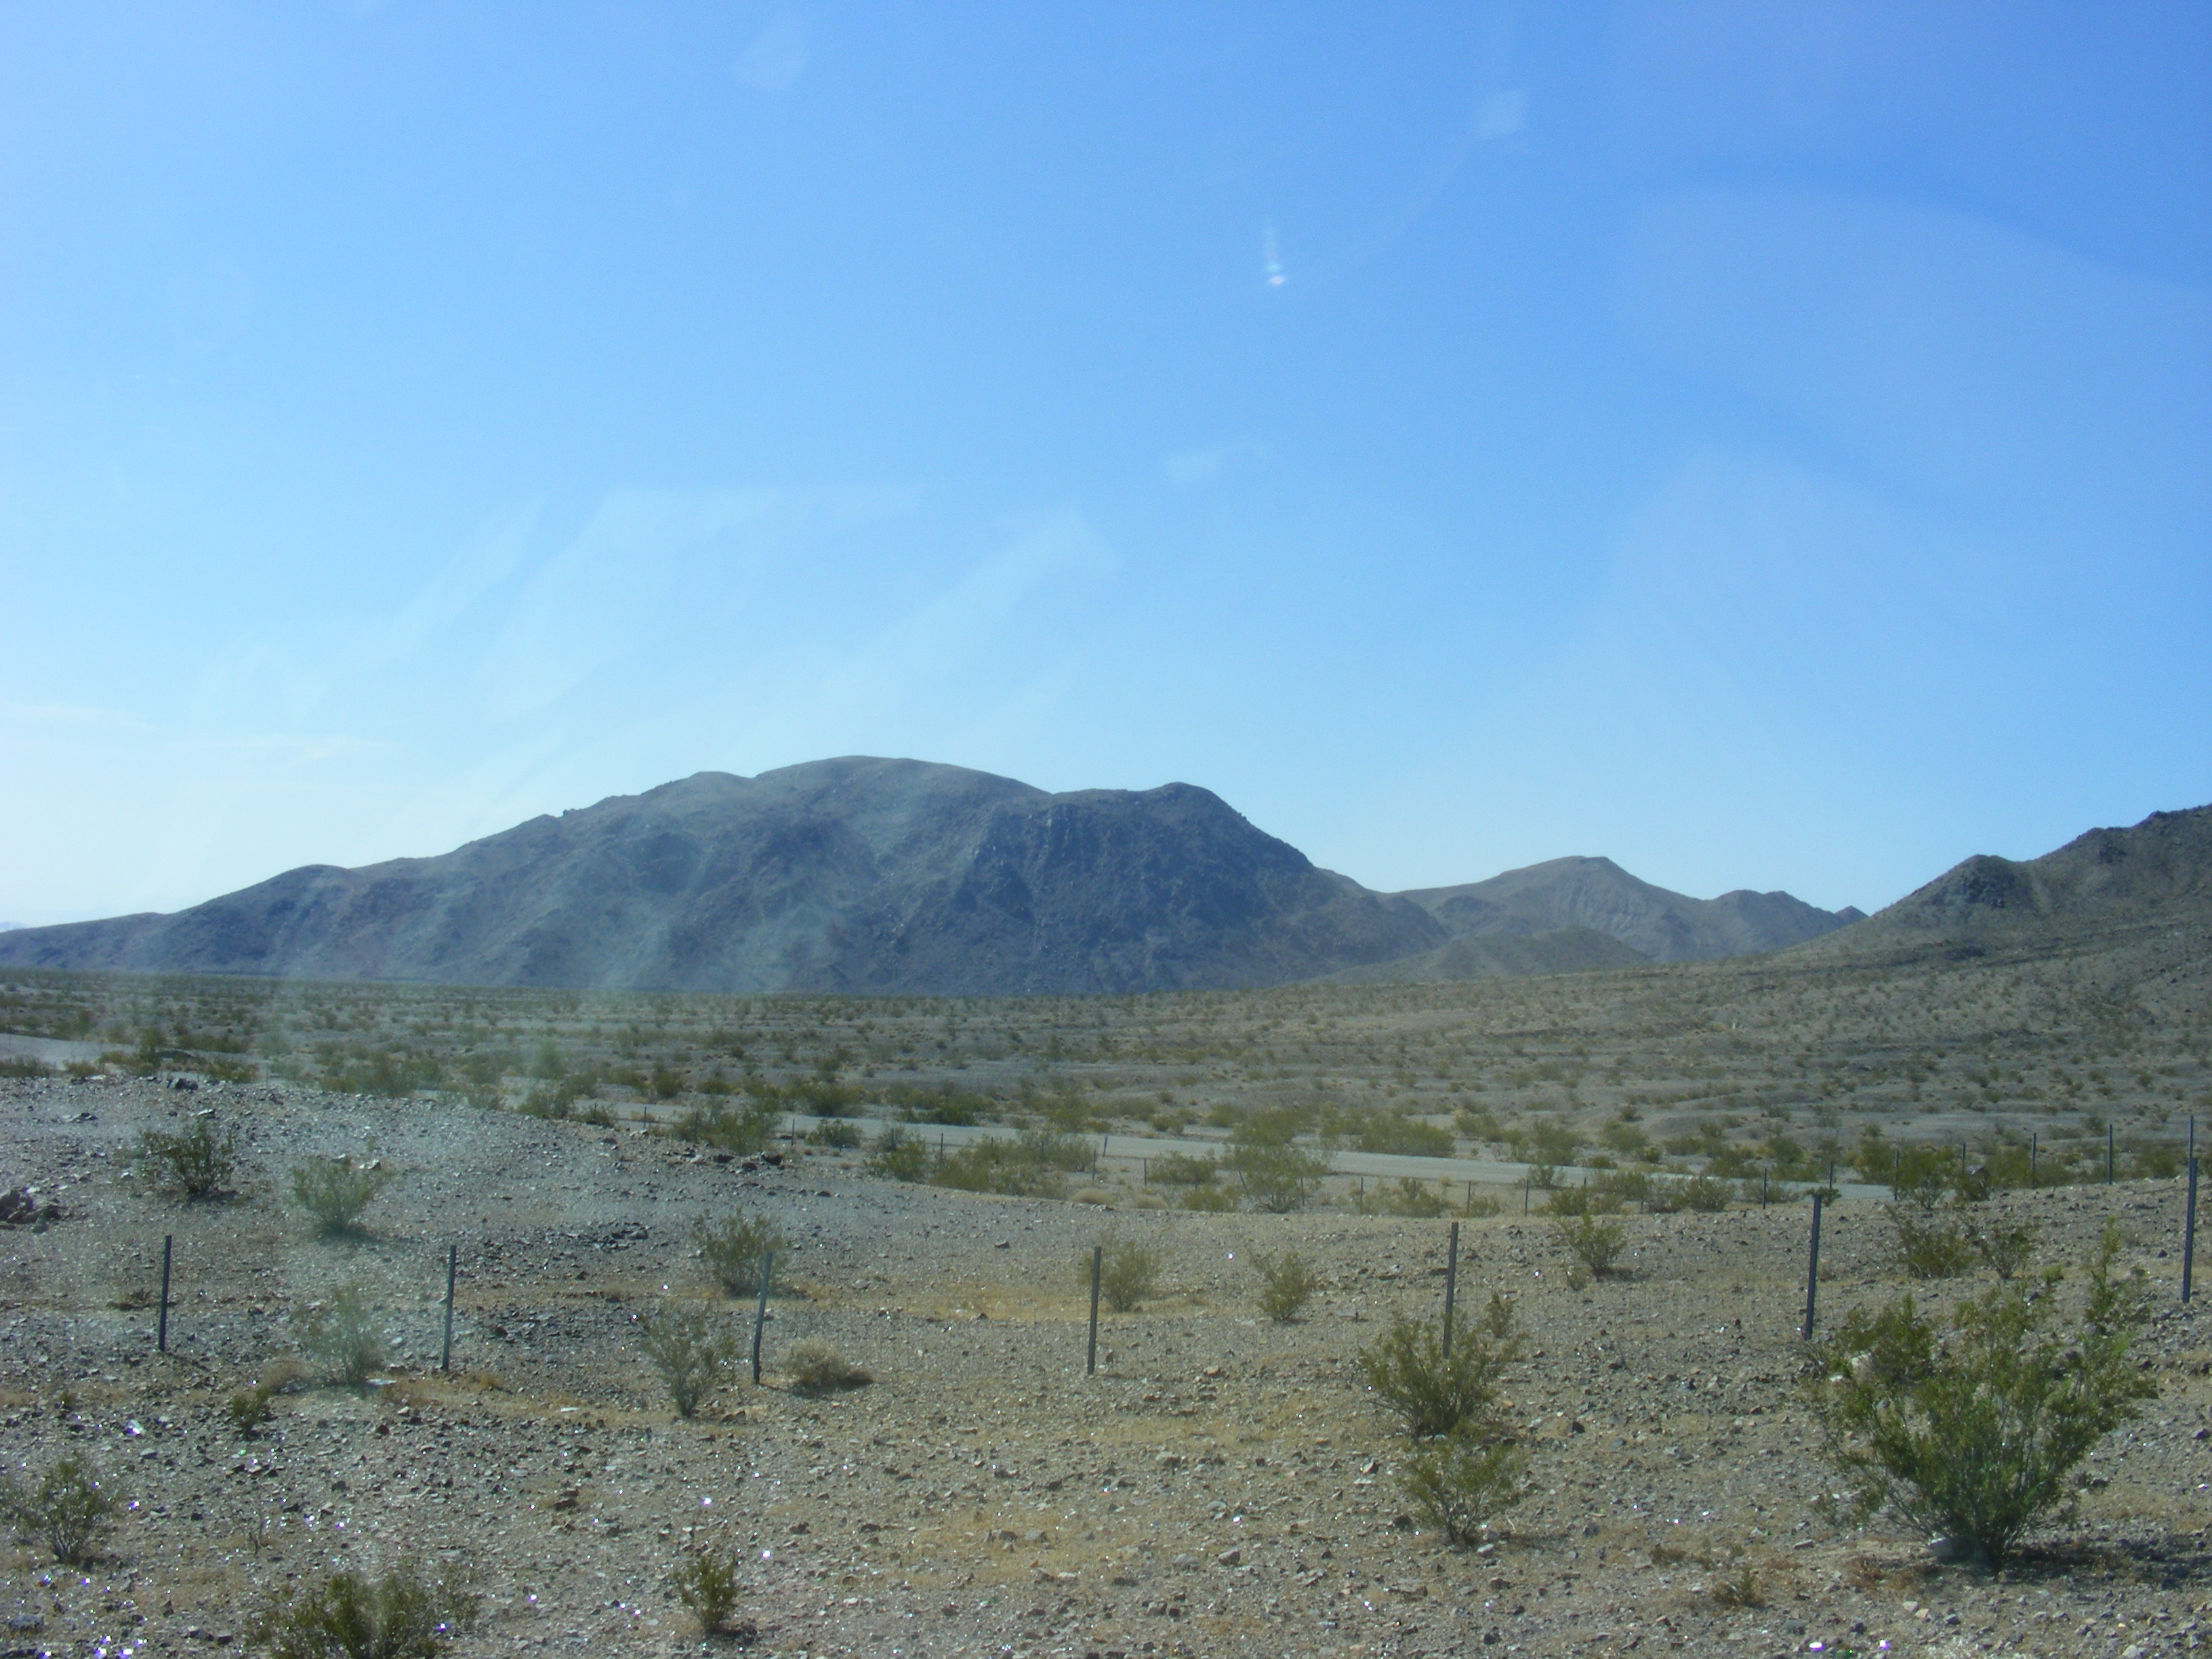 Mojave Desert... on the way to Las Vegas